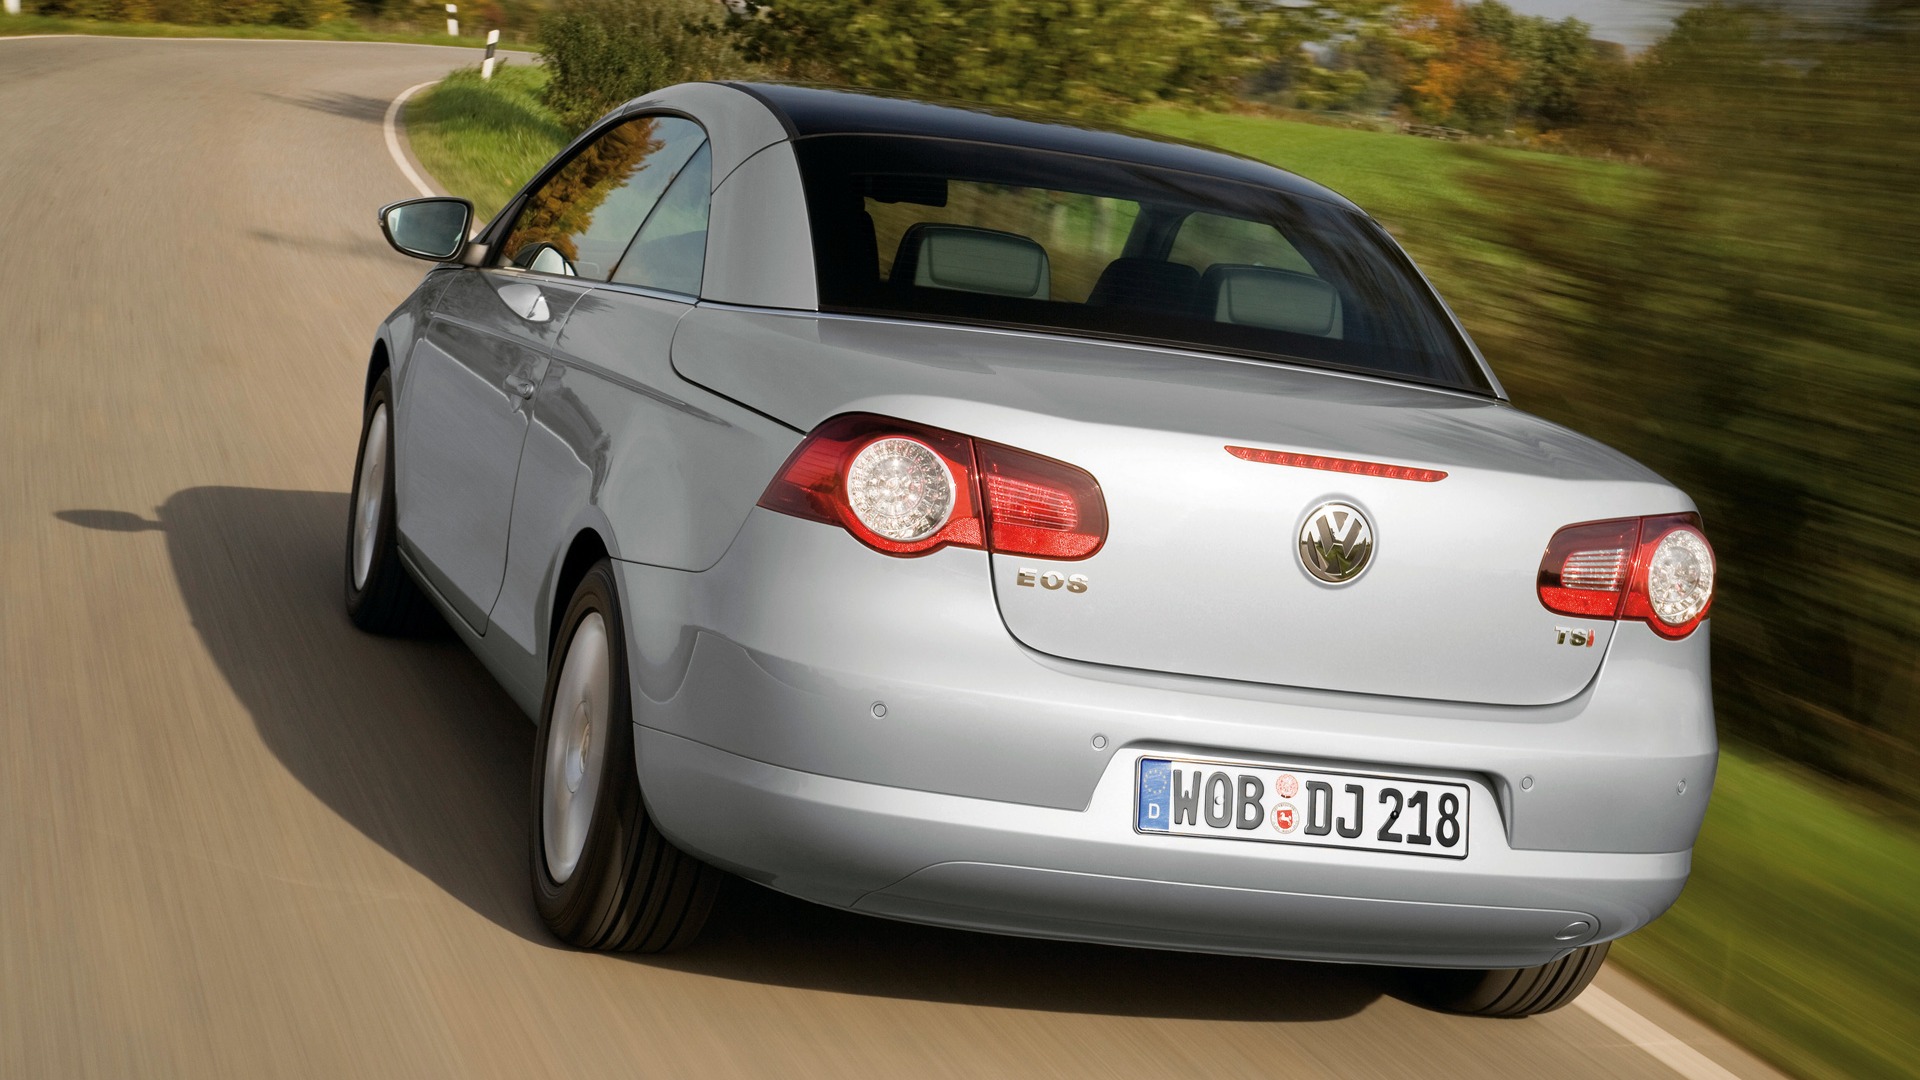 Volkswagen Eos - 2010 大众16 - 1920x1080